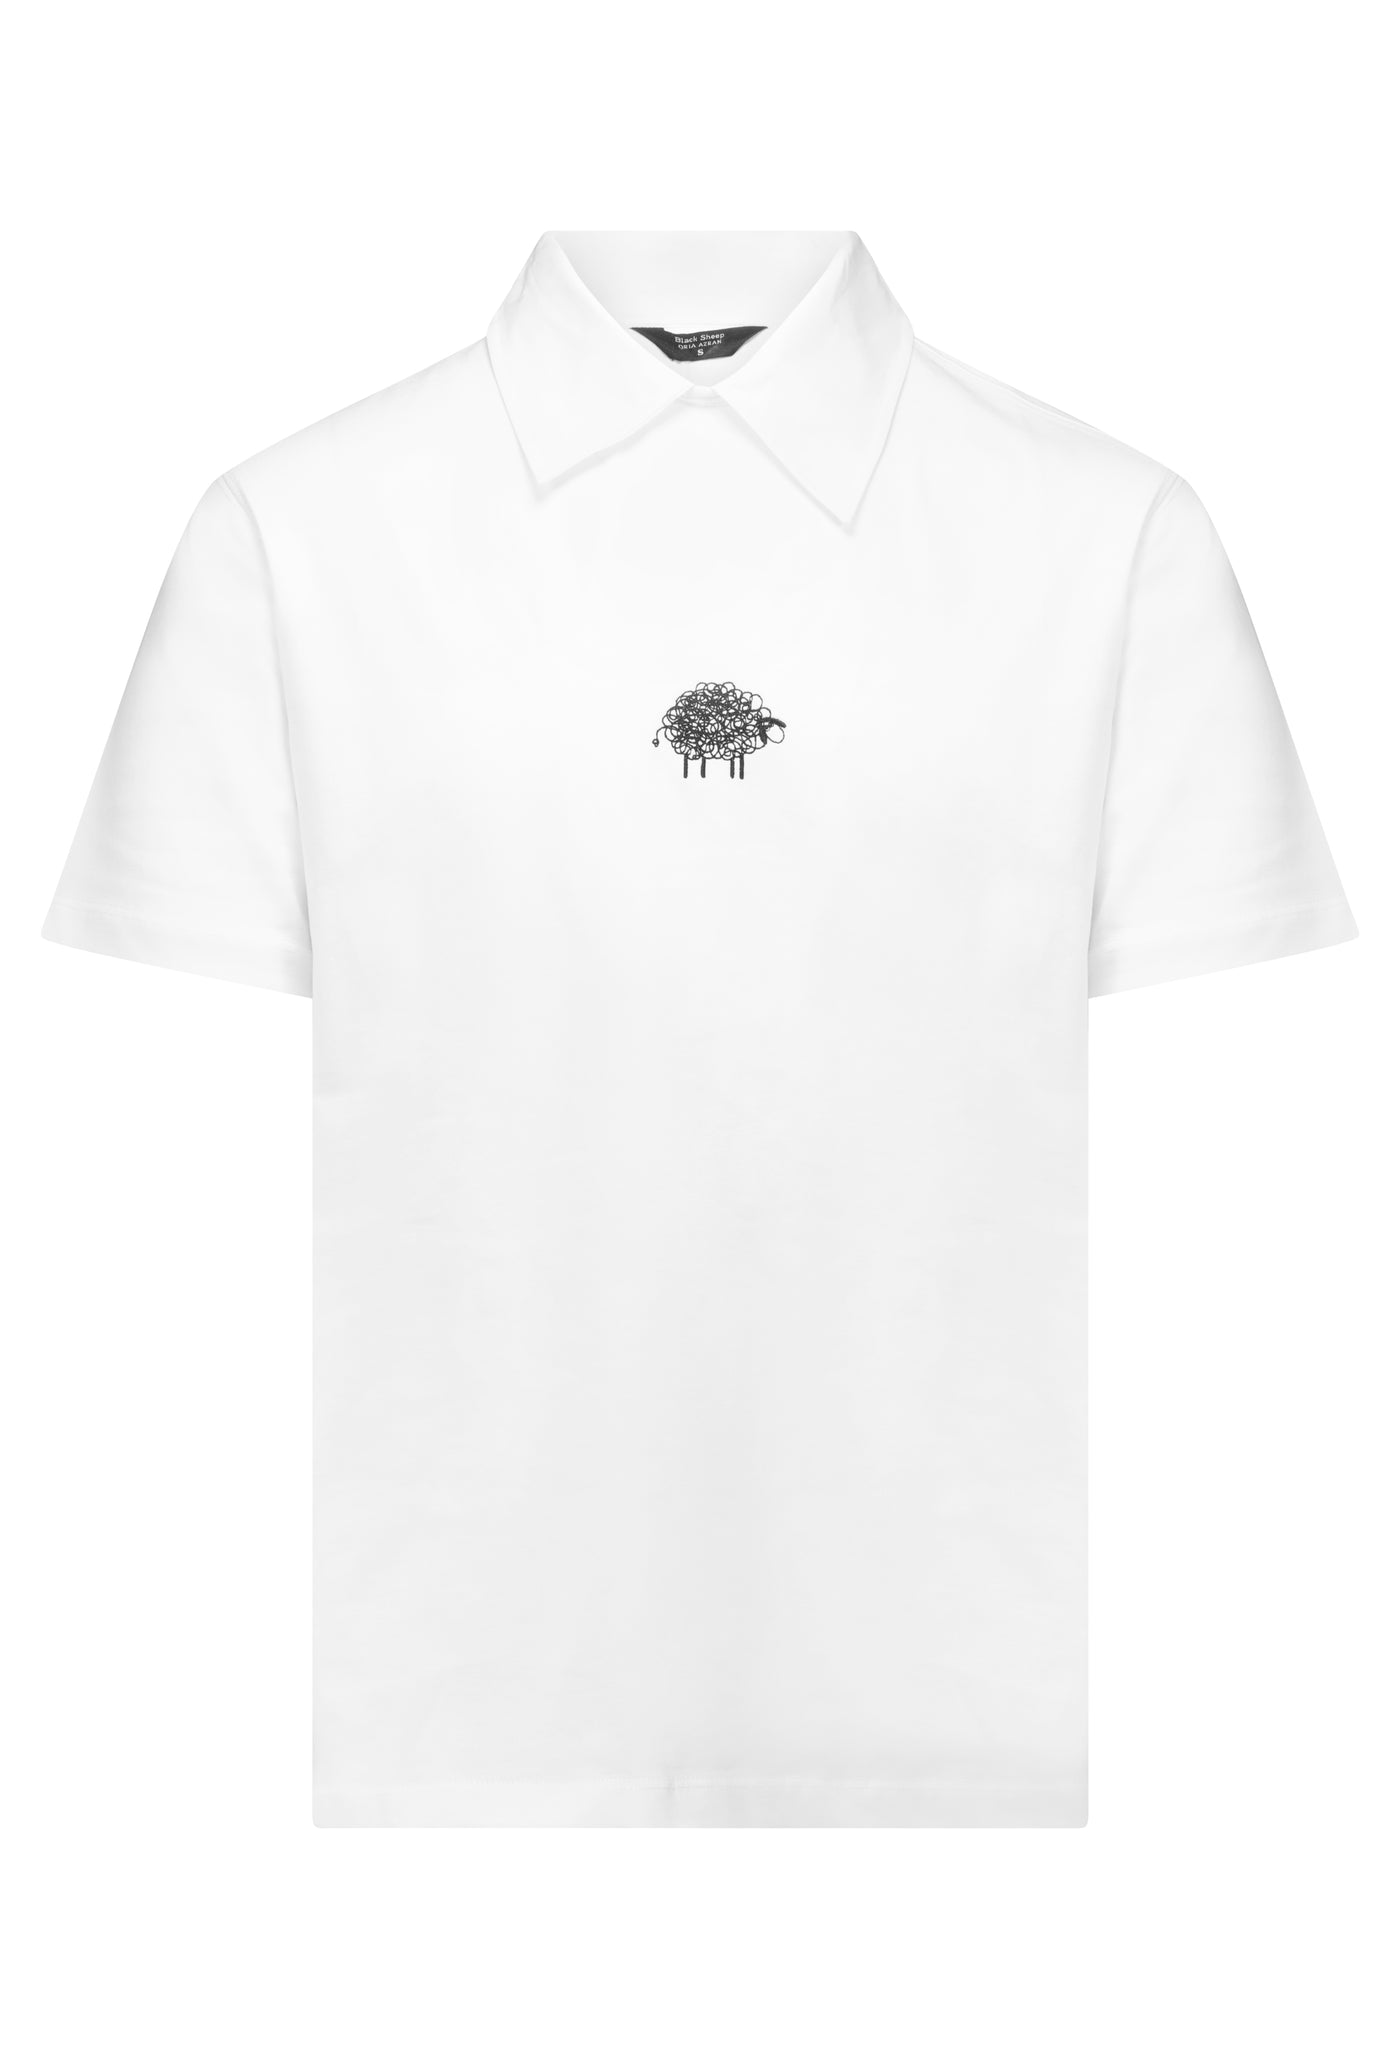 חולצת Black Sheep- קצרה לבנה יוניסקס